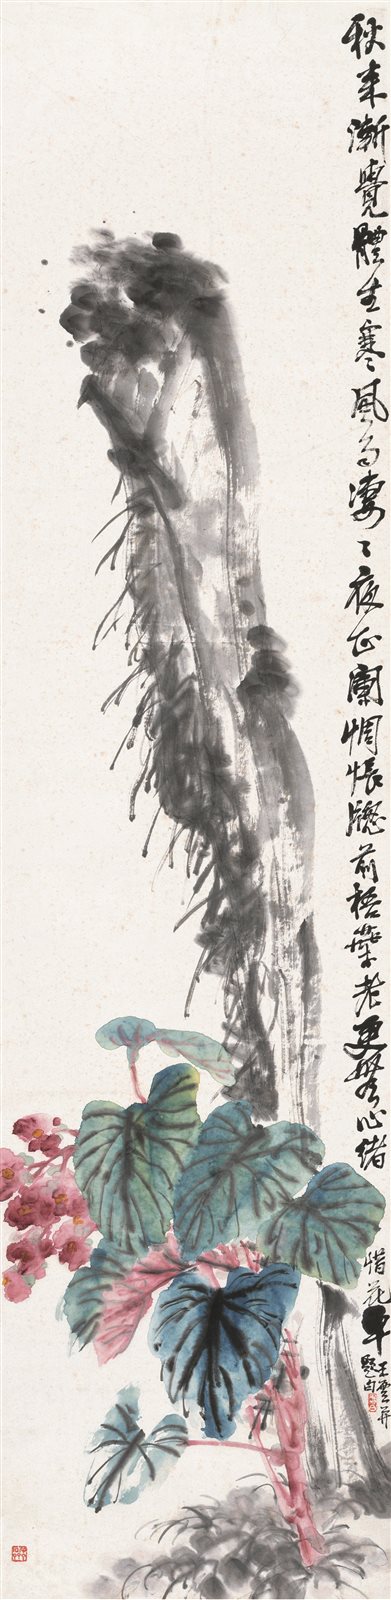 海棠寿石图